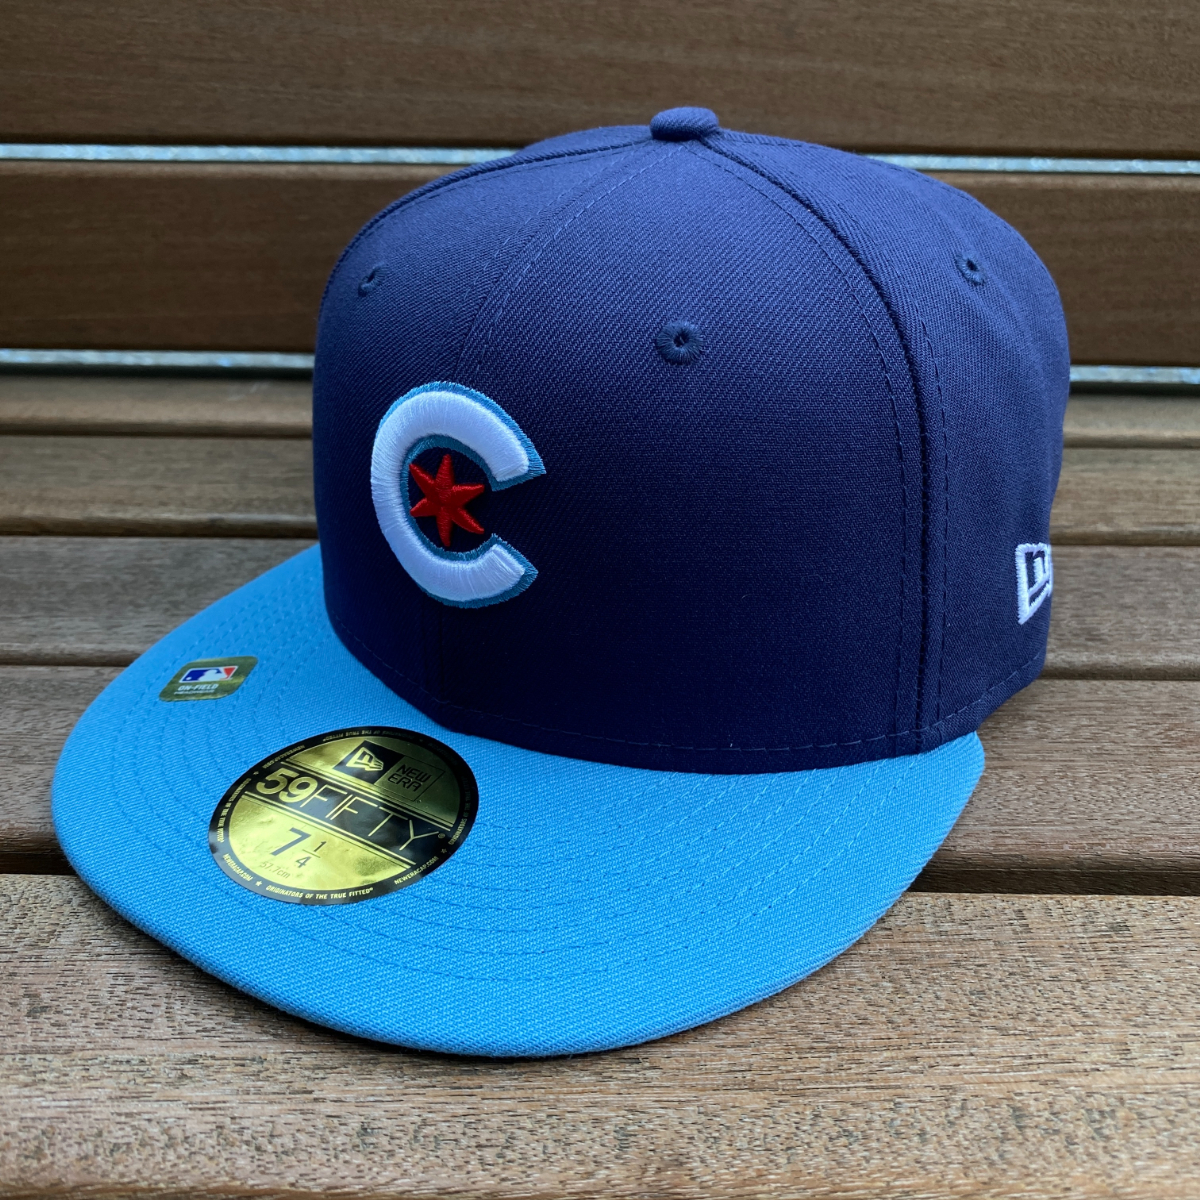 限定モデル 【6.7/8】 NEWERA ニューエラ MLB シカゴ カブス Chicago Cubs シティコネクト City Connect 59FIFTY 米国正規品 メジャー